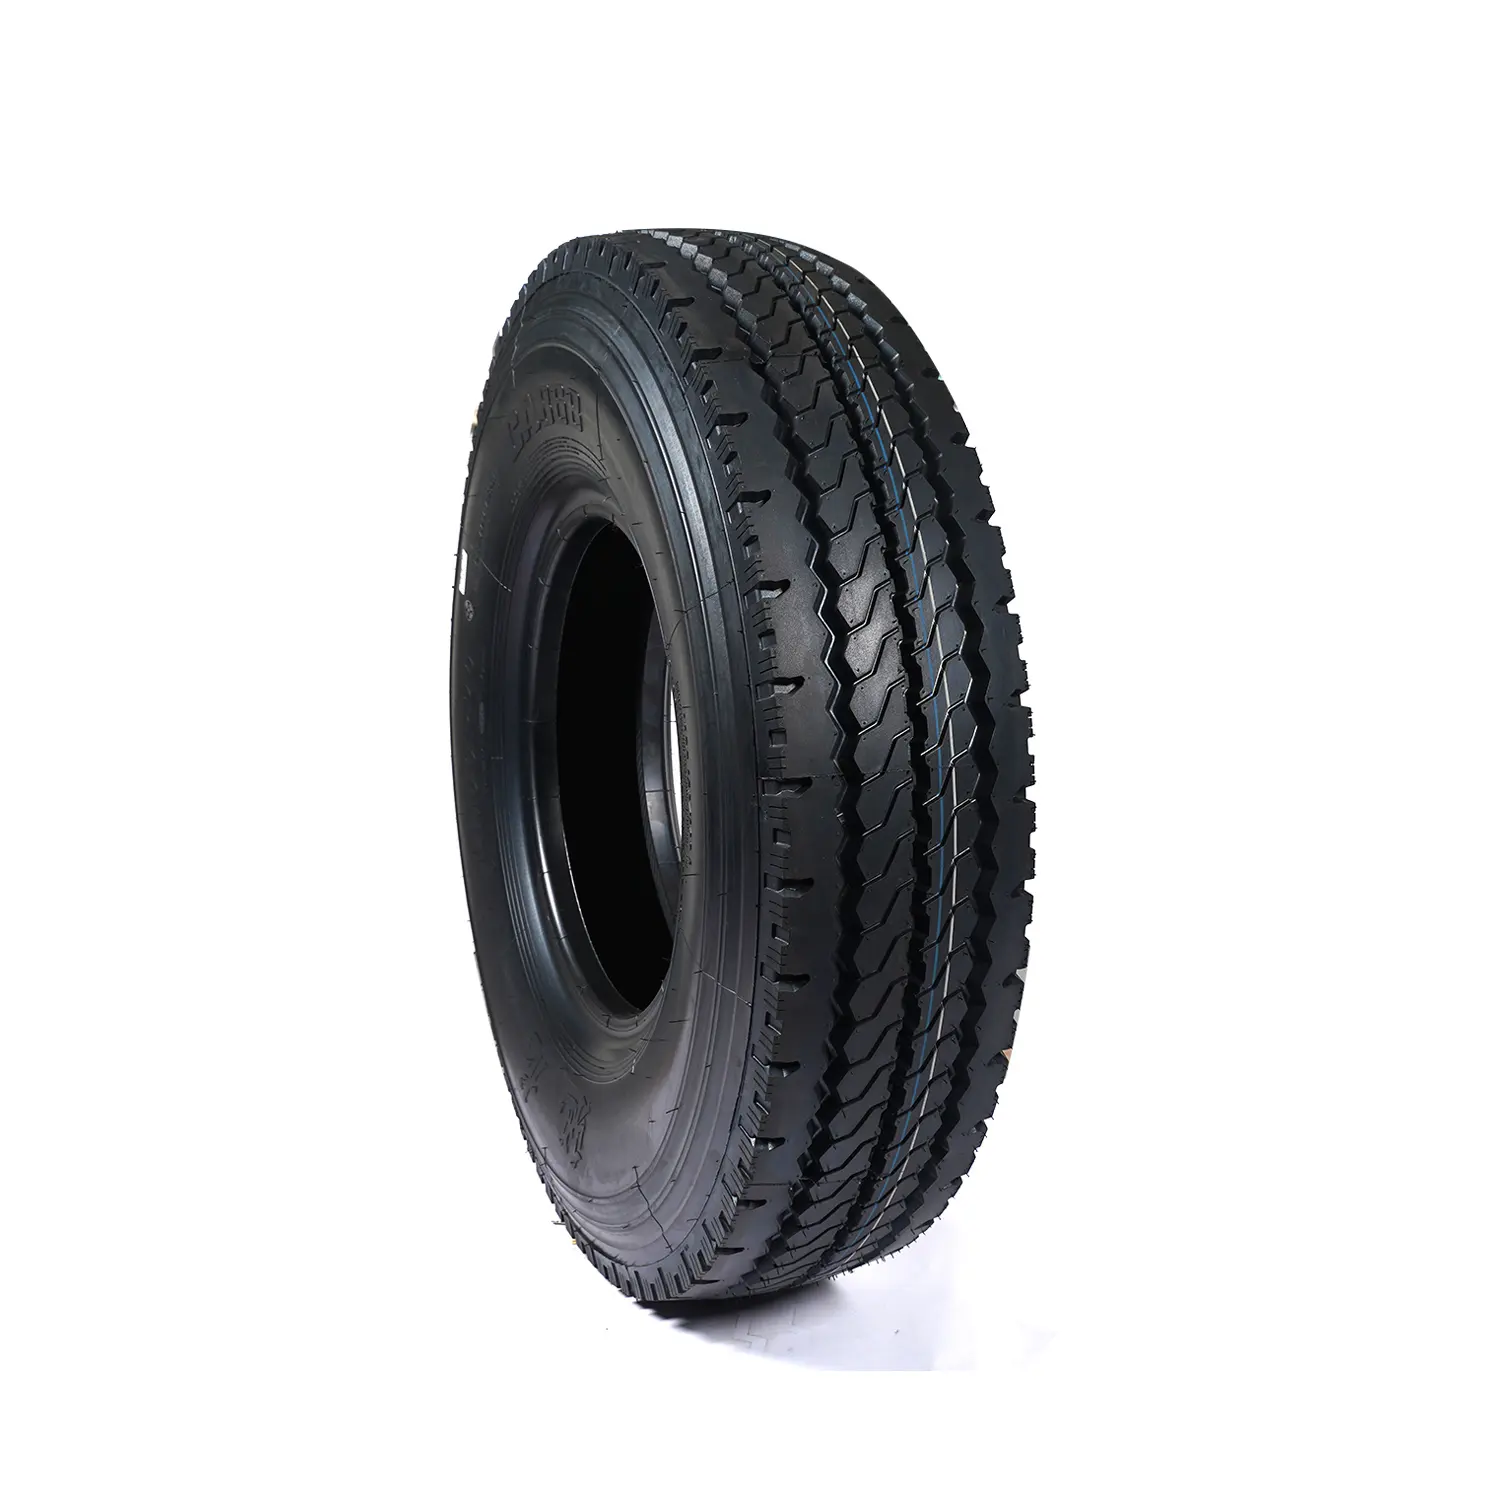 Cheap tires for trucks 11r 225 295 75 22.5 11 R24.5 315 80 drive 295/75R22.5 truck tires